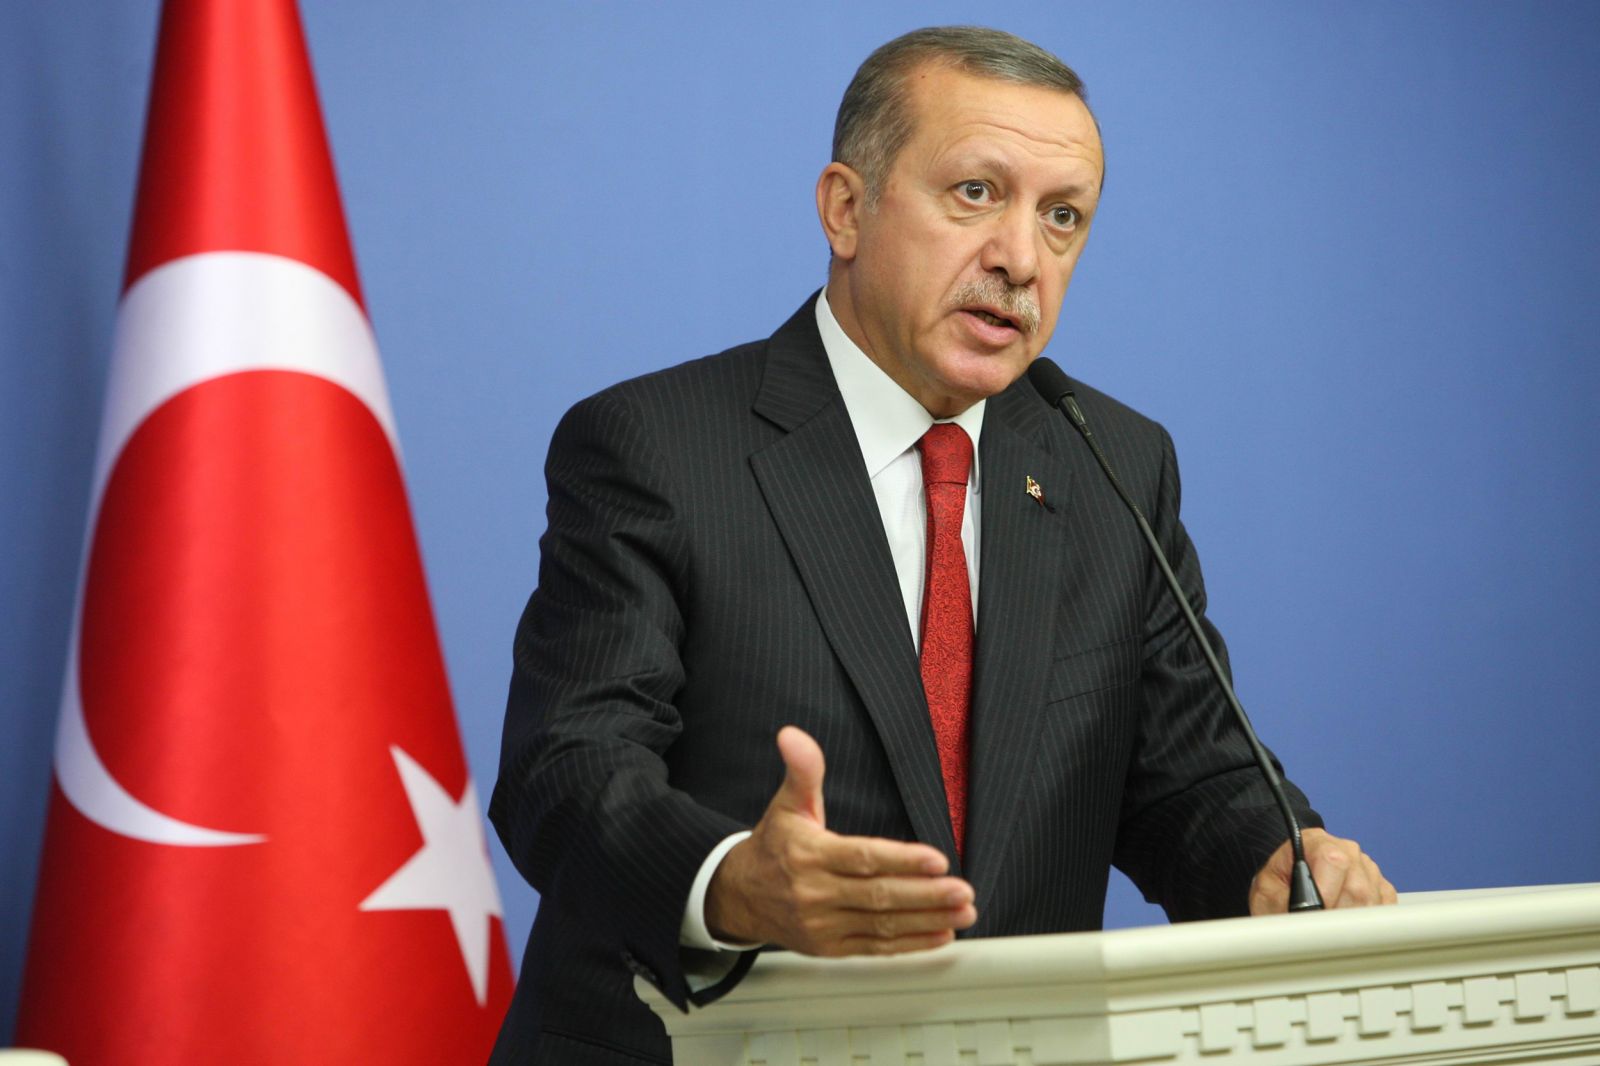 اردوغان ينتقد رغبة القبرصي "اكينجي " بالتحرر من الهيمنة التركية